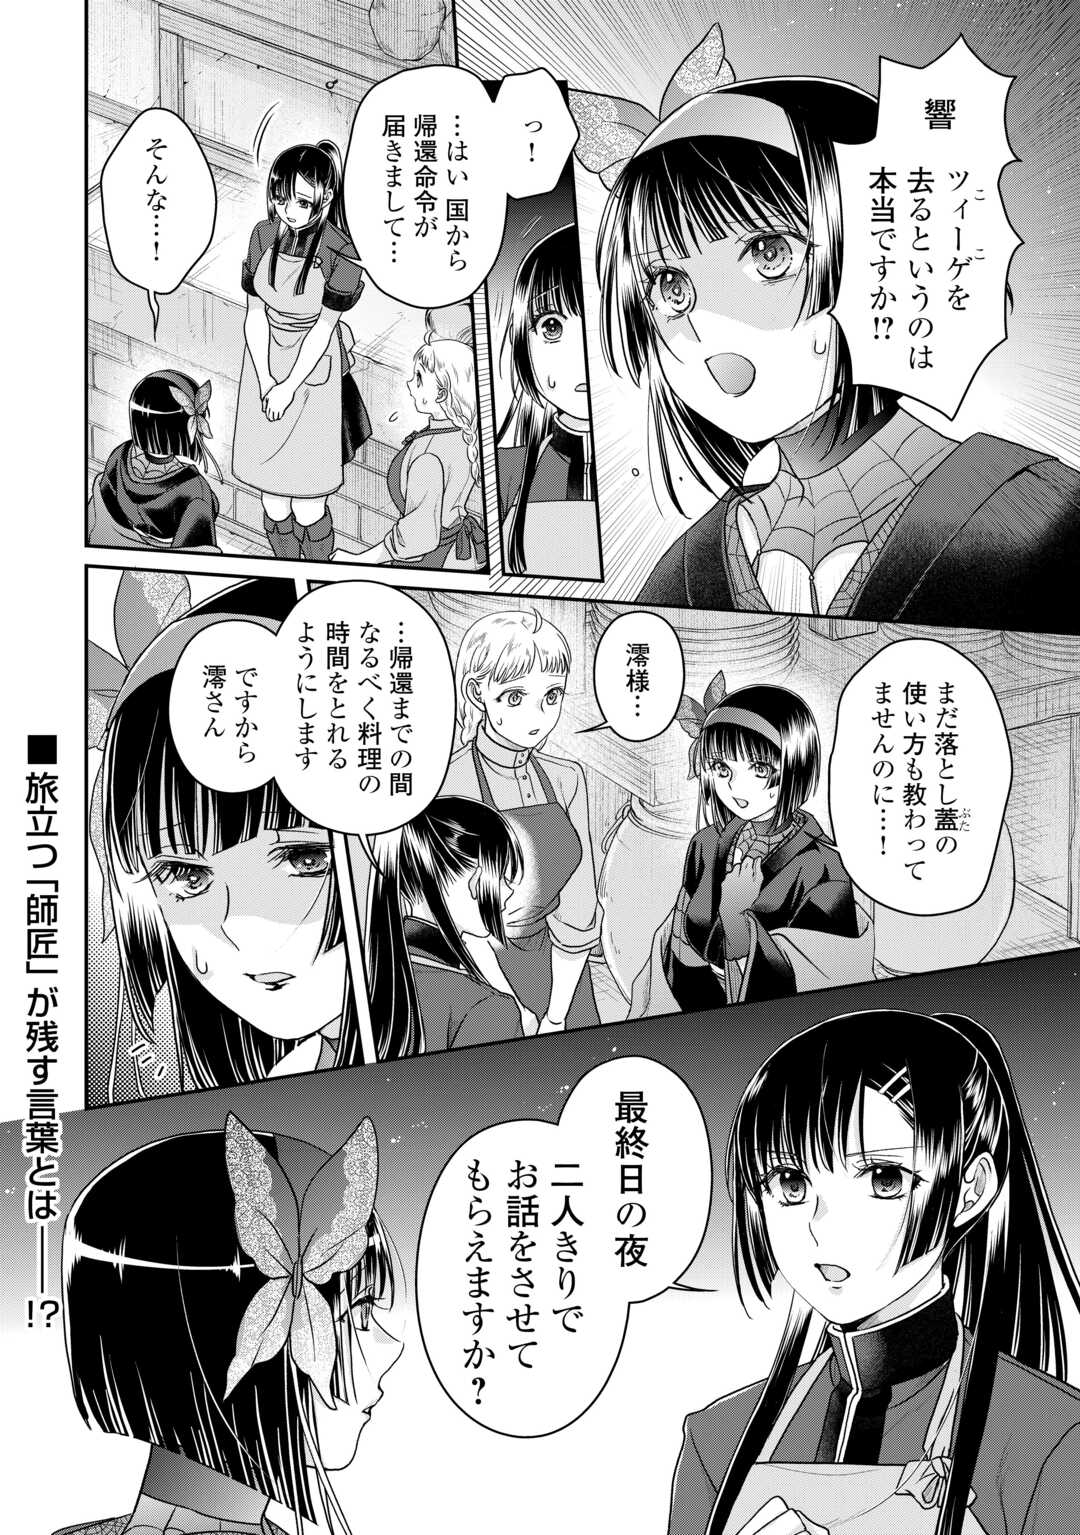 Tsuki ga Michibiku Isekai Douchuu - Chapter 93 - Page 24